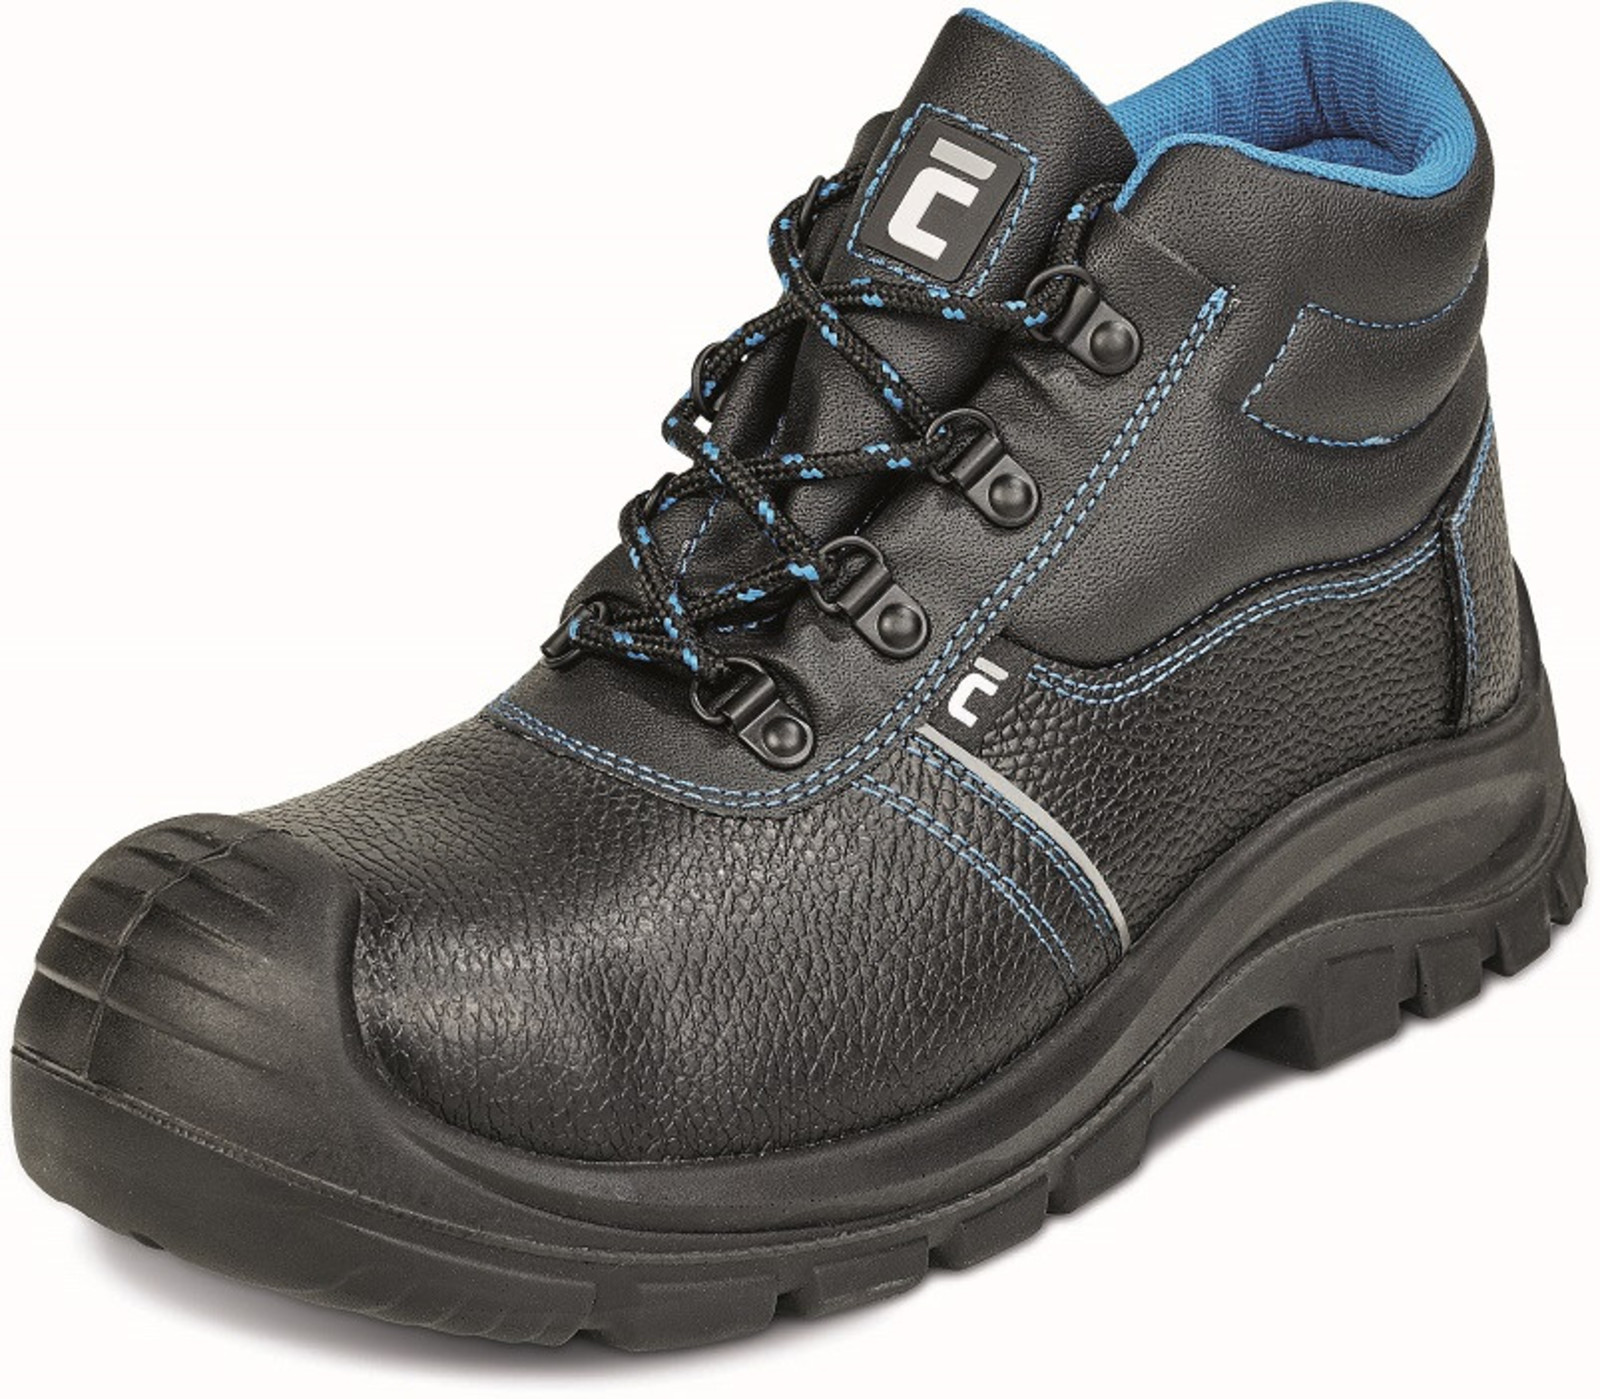 Bezpečnostná obuv Raven XT S1 - veľkosť: 42, farba: čierna